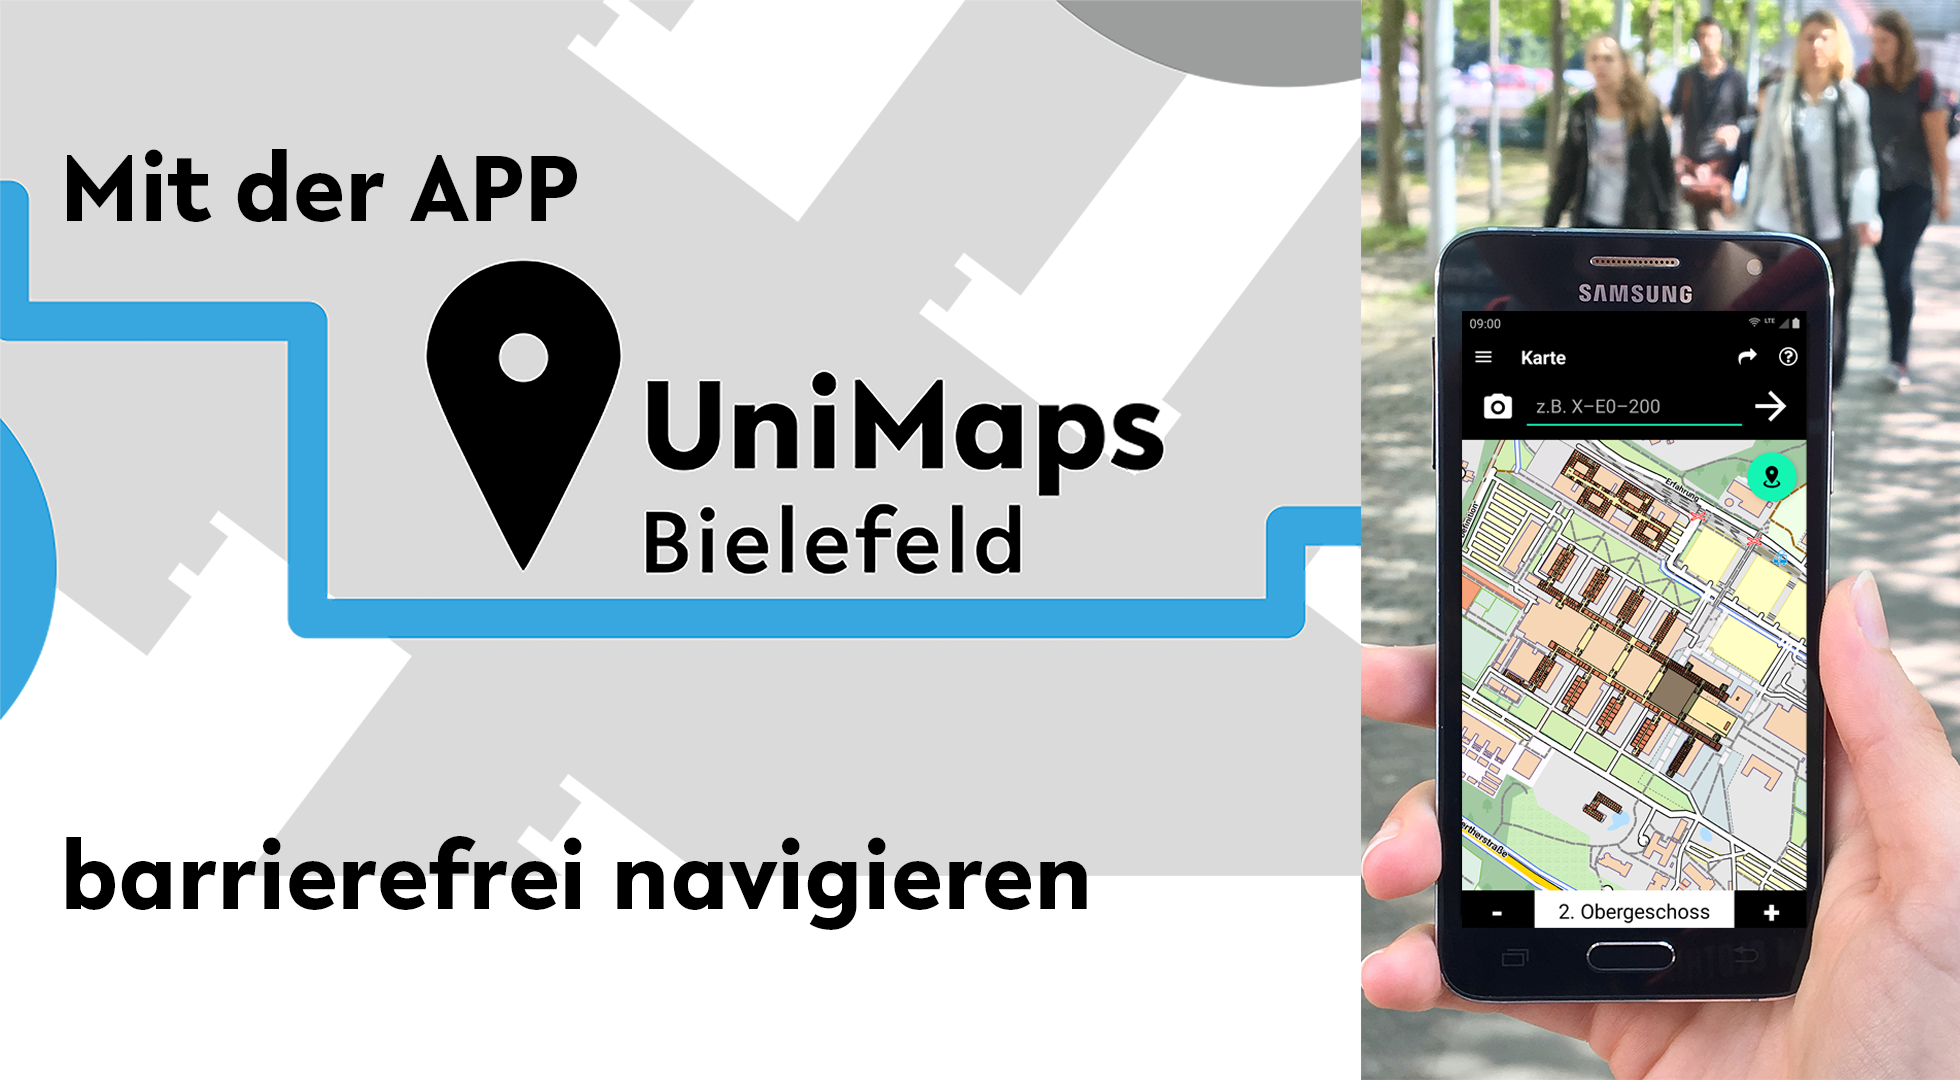 Schriftzug "Mit der APP UniMaps Bielefeld barrierefrei navigieren"